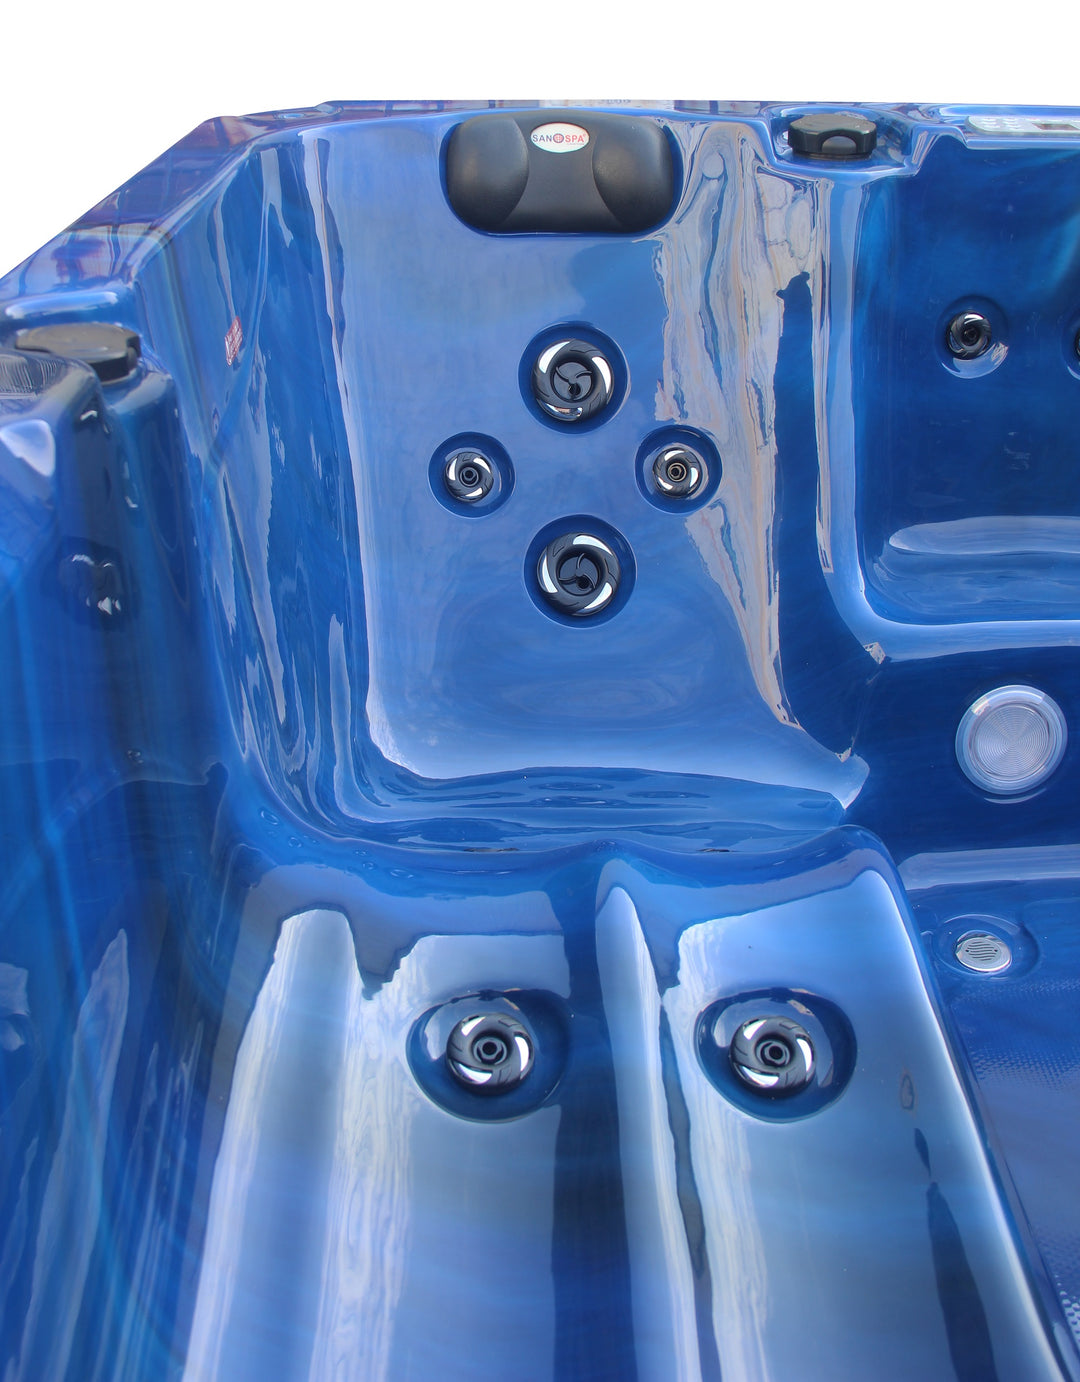 Outdoorwhirlpool PALMA Blau inkl. Abdeckung und Stiege 190x190x86 cm